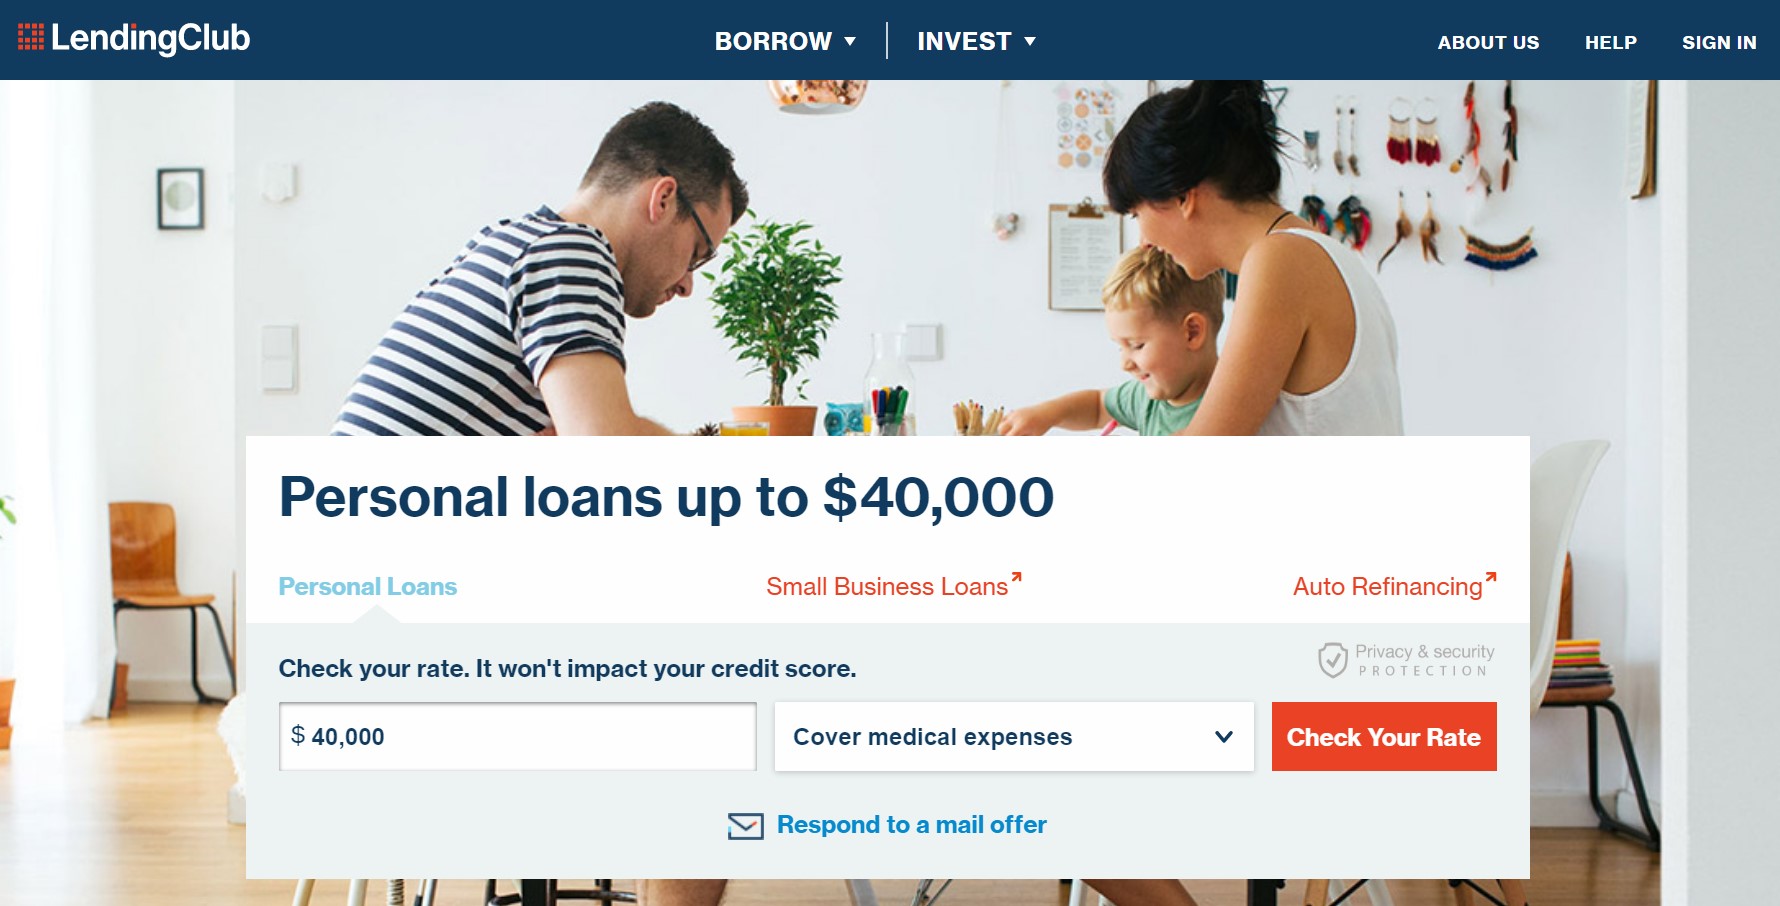 Lending Club, favori kitle fonlaması web sitelerimizden biridir.